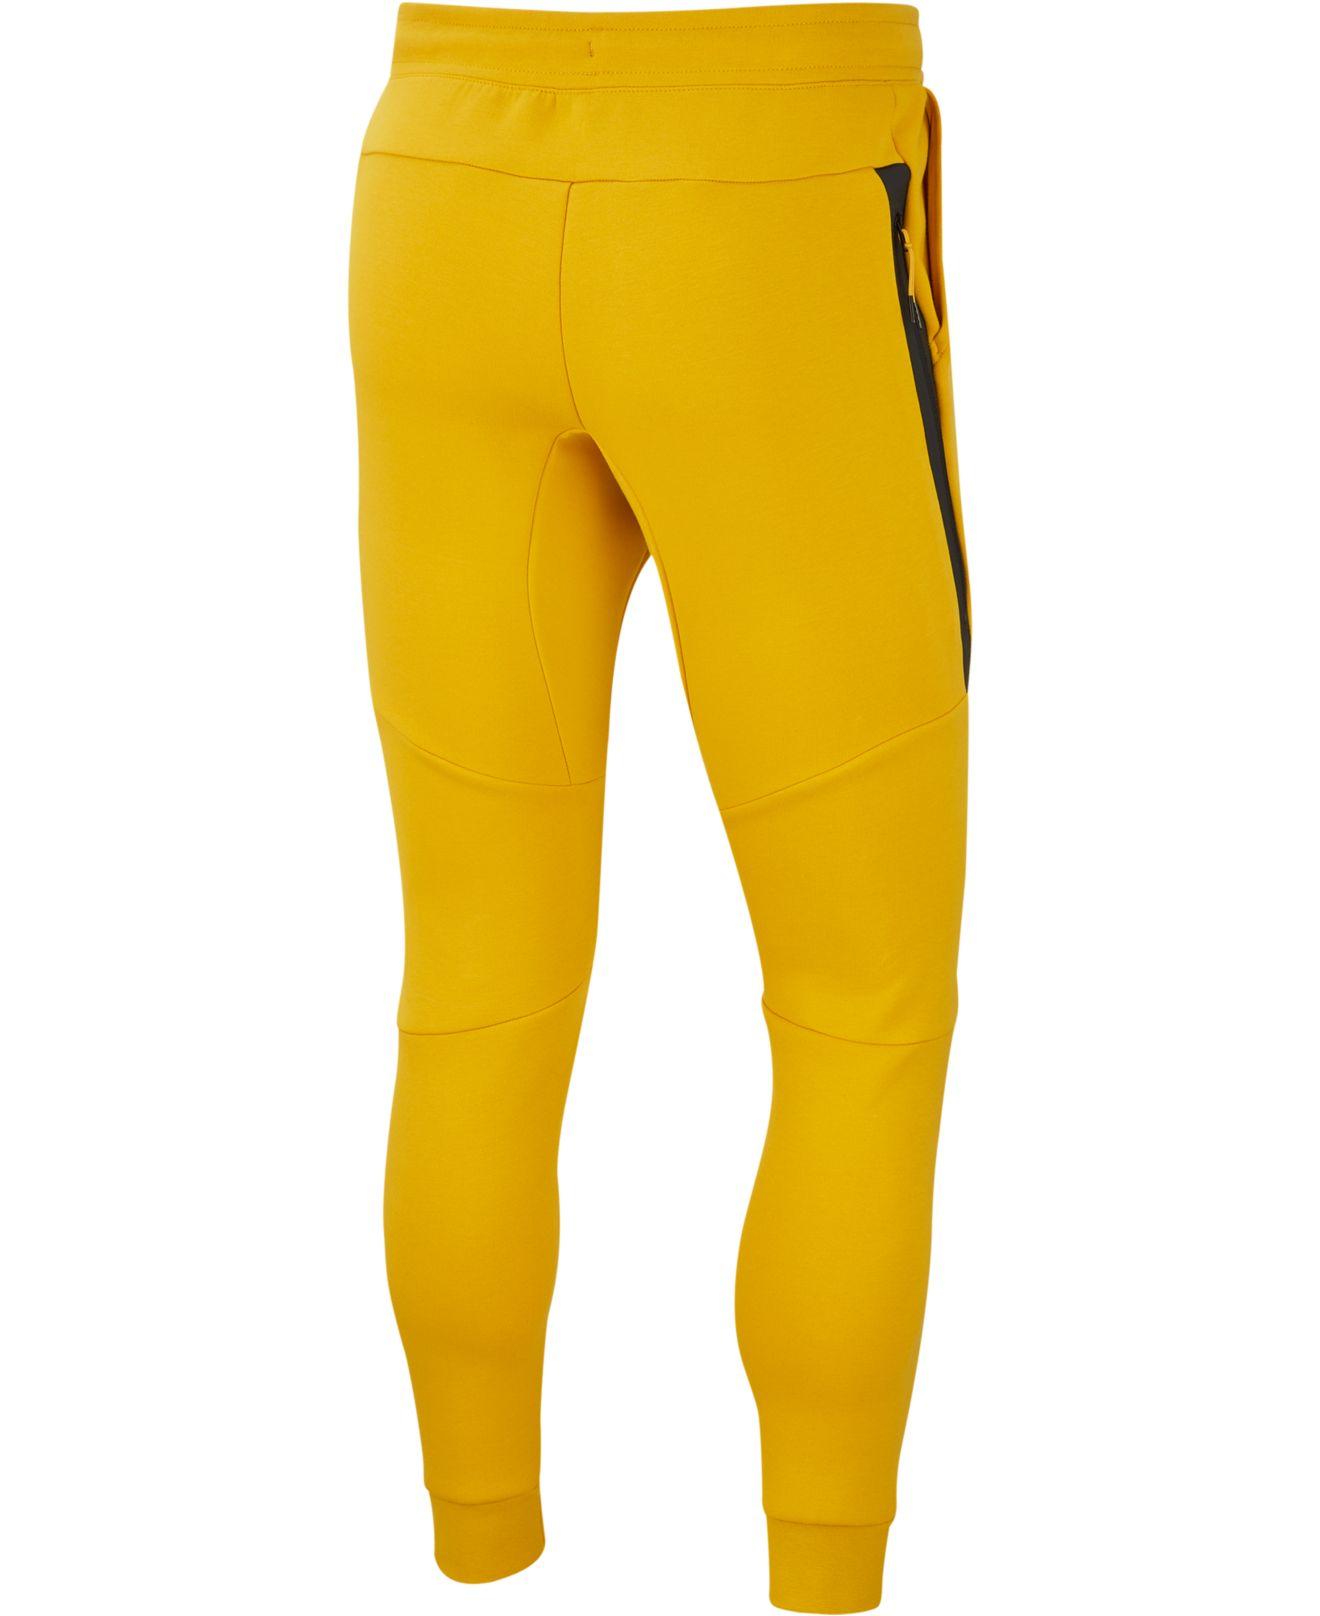 Nike Tech Fleece Joggers in Yellow for Men - Lyst